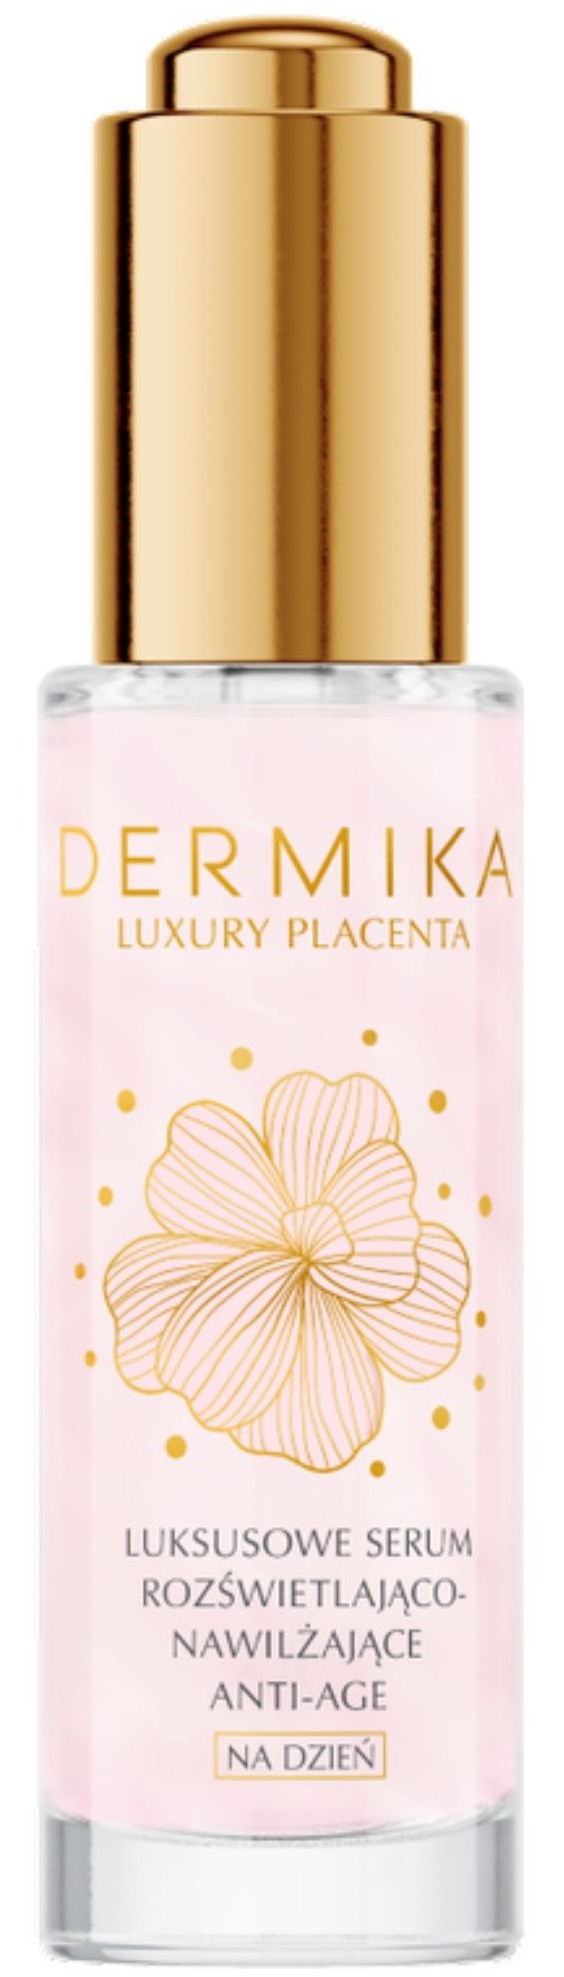 Dermika Luxury Placenta Anti-Age Illuminating And Moisturizing Serum